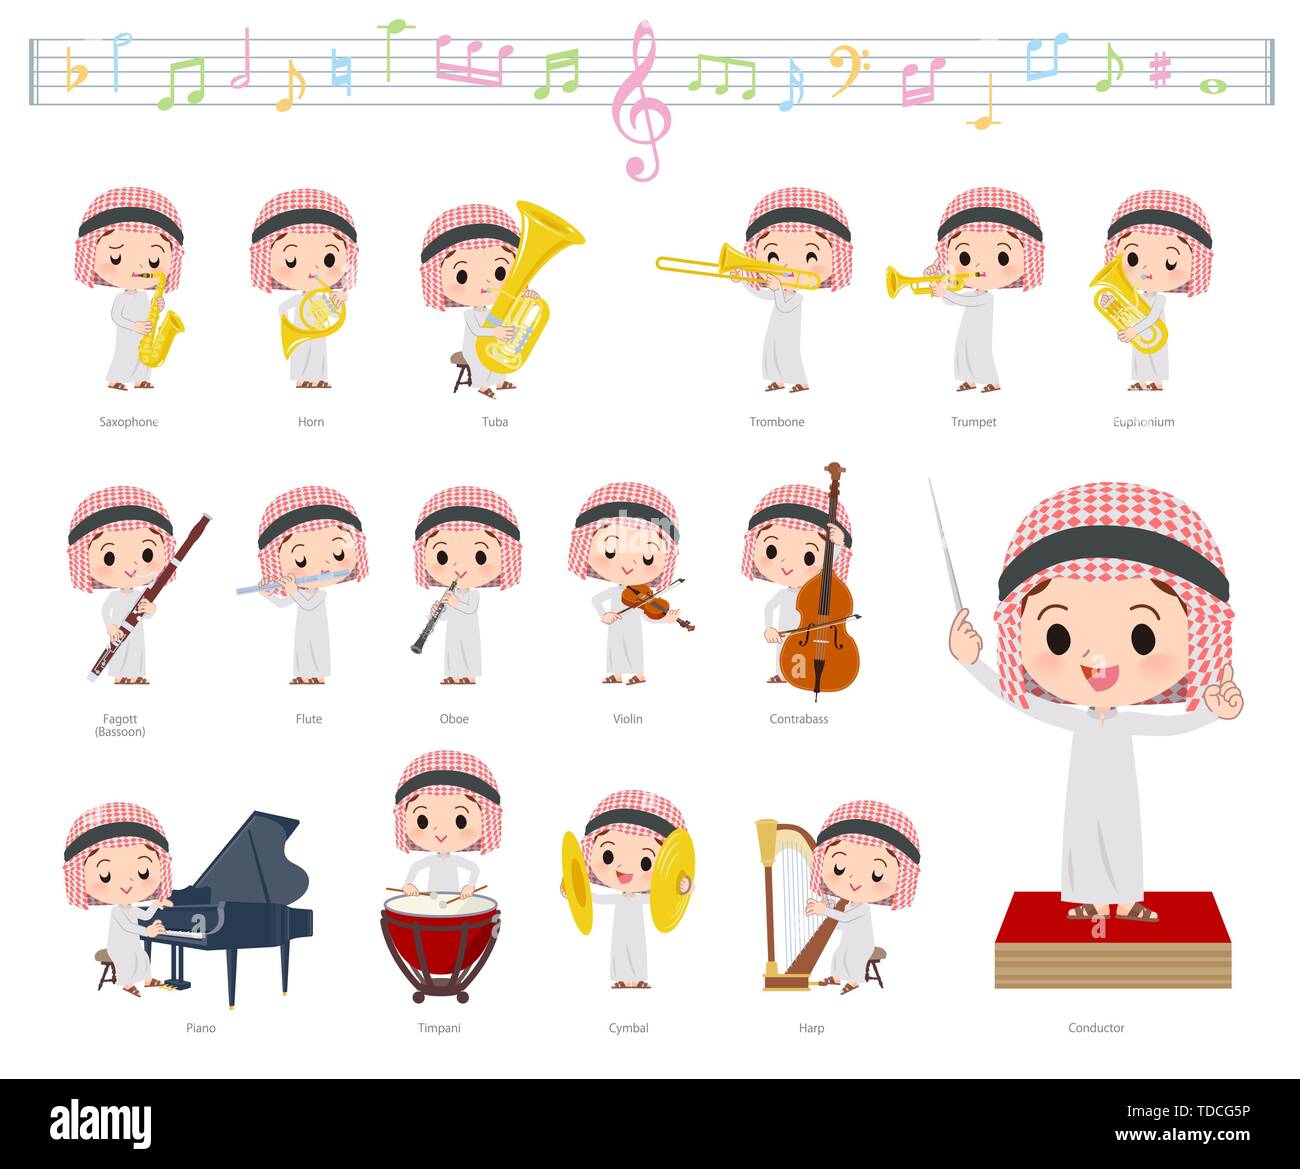 Un jeu de garçon islamique sur musique classique.Il y a des mesures à jouer de divers instruments, tels que les instruments à cordes et instruments à vent.C' Illustration de Vecteur